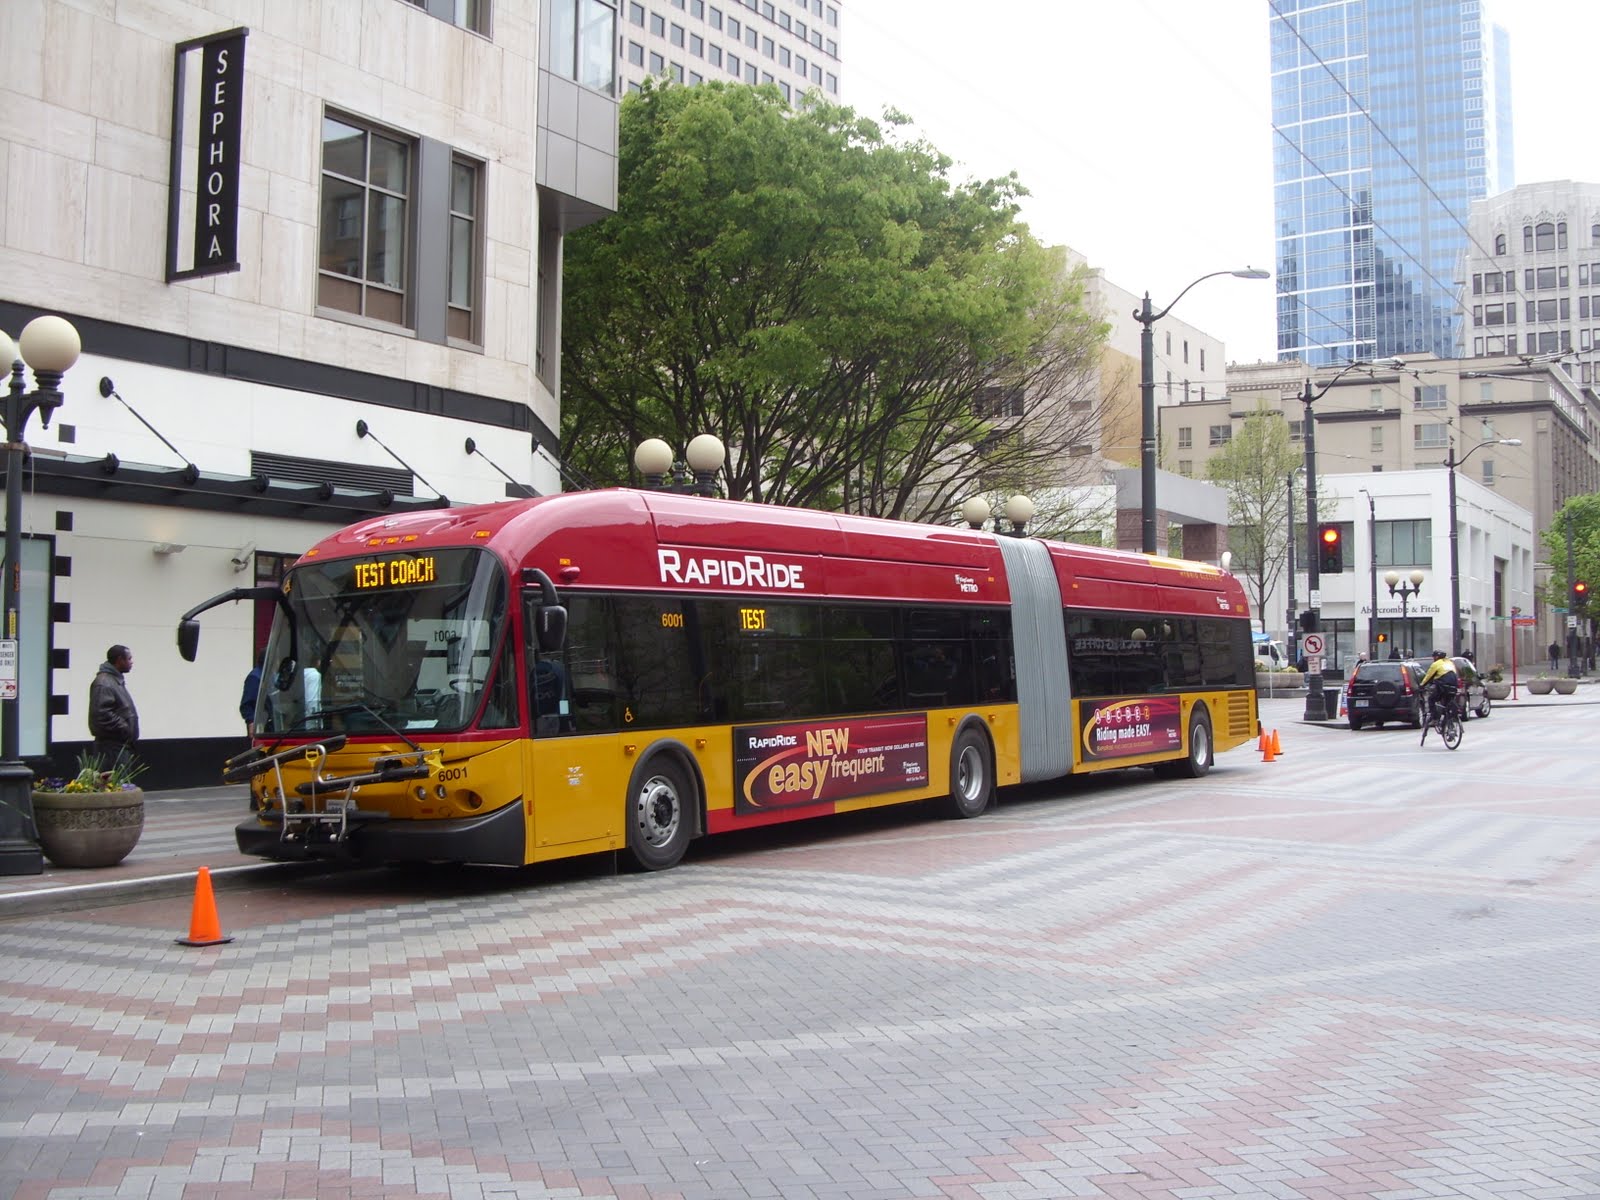 punkrawker blogs on: Metros RapidRide Bus on Display